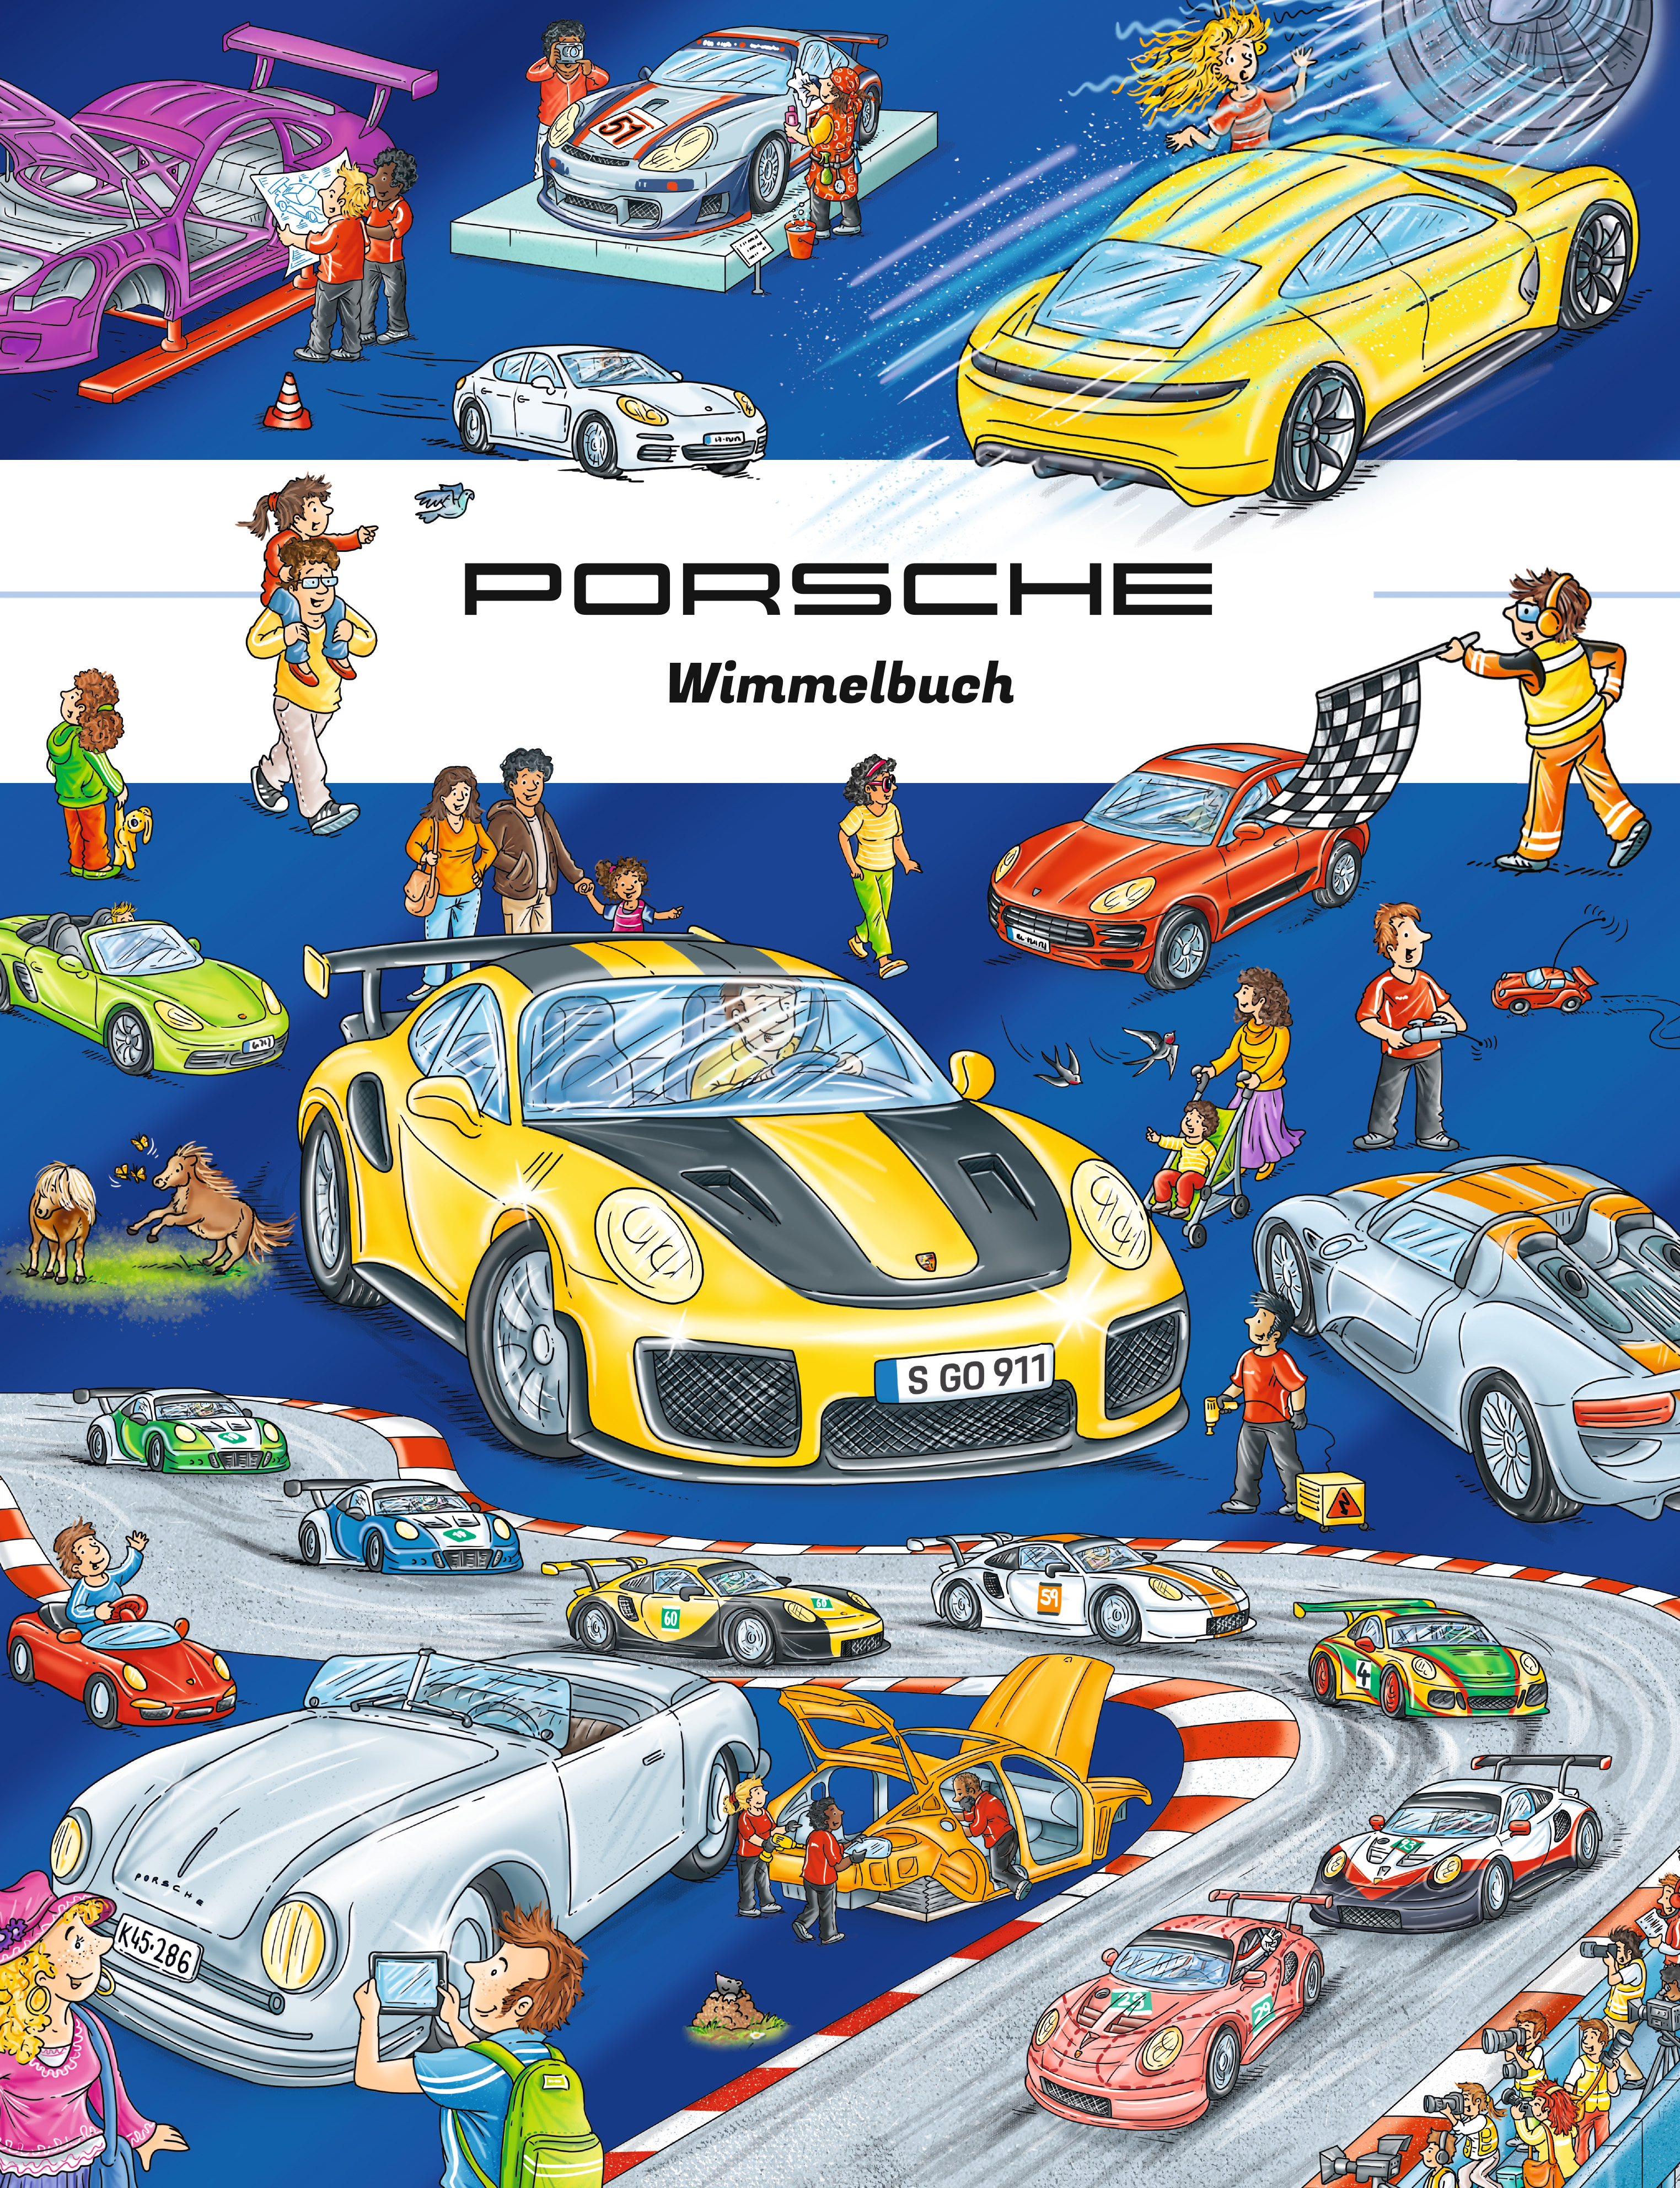 Porsche Wimmelbuch, Berliner Wimmelbuchverlag, 2018, Porsche AG